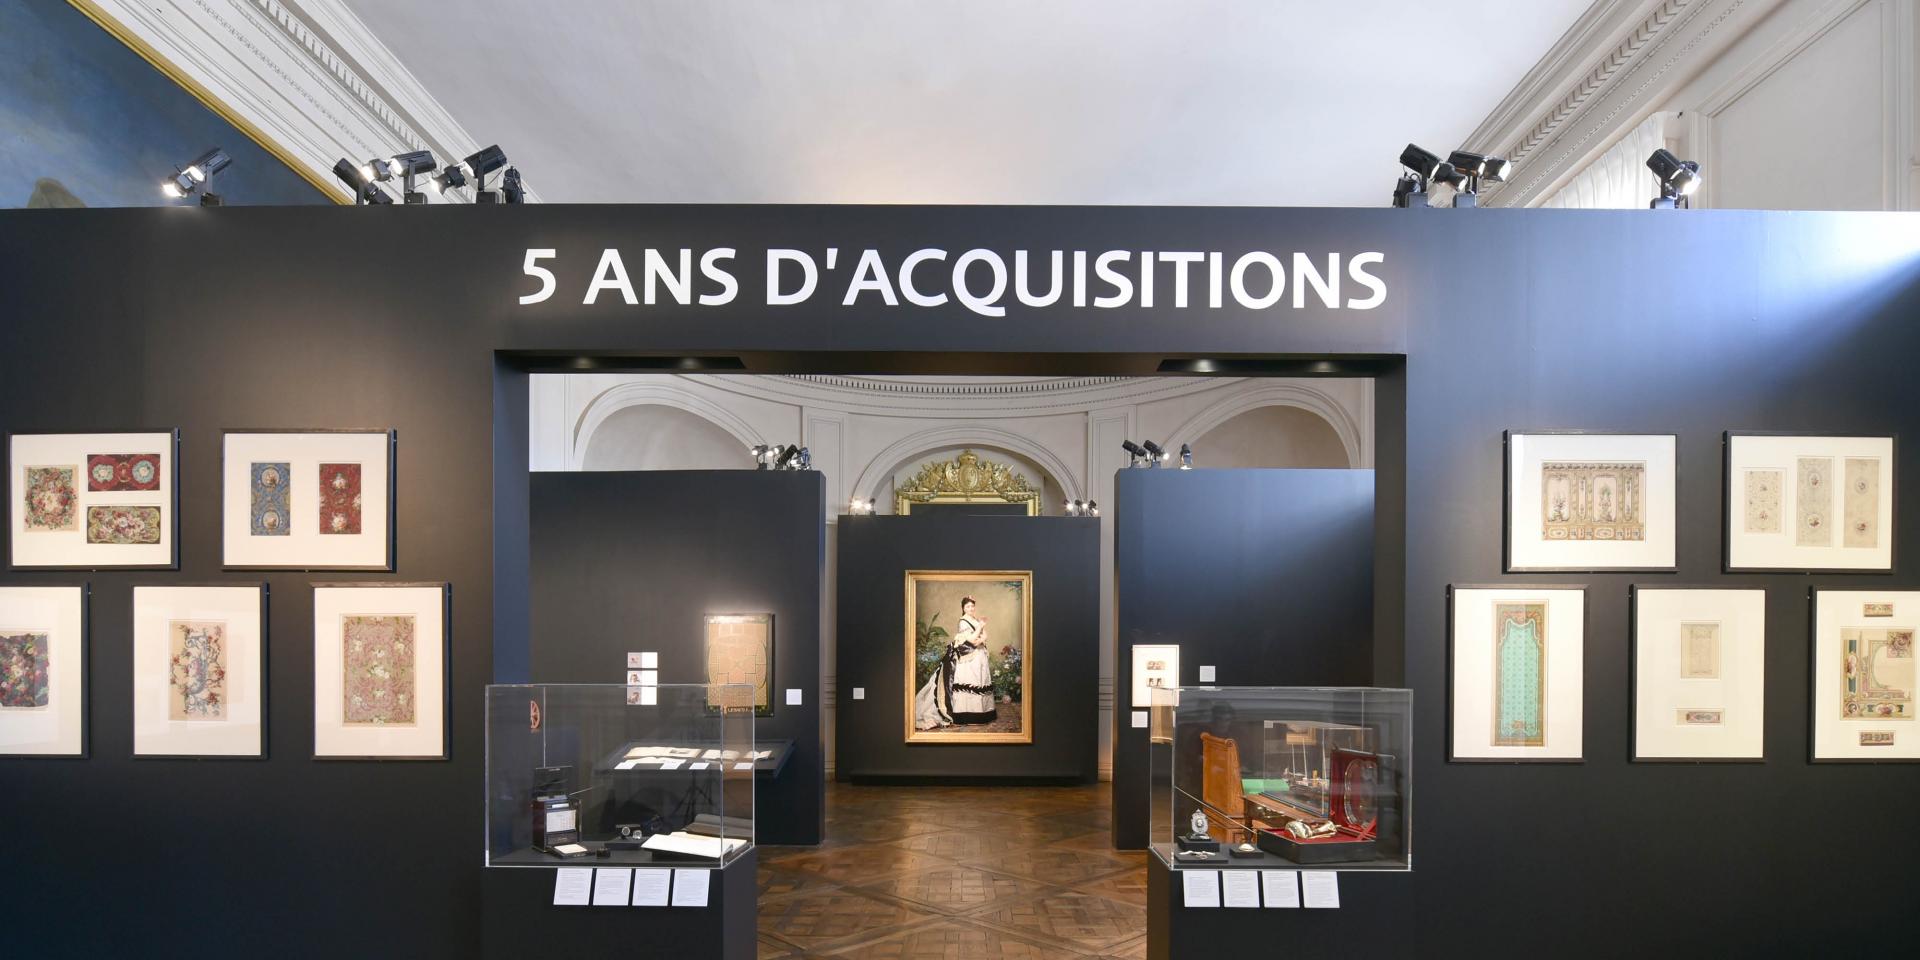 Expo : 5 ans d'acquisitions du Château de Compiègne Exposition-5-ans-dacquisition-chateau-de-compiegne